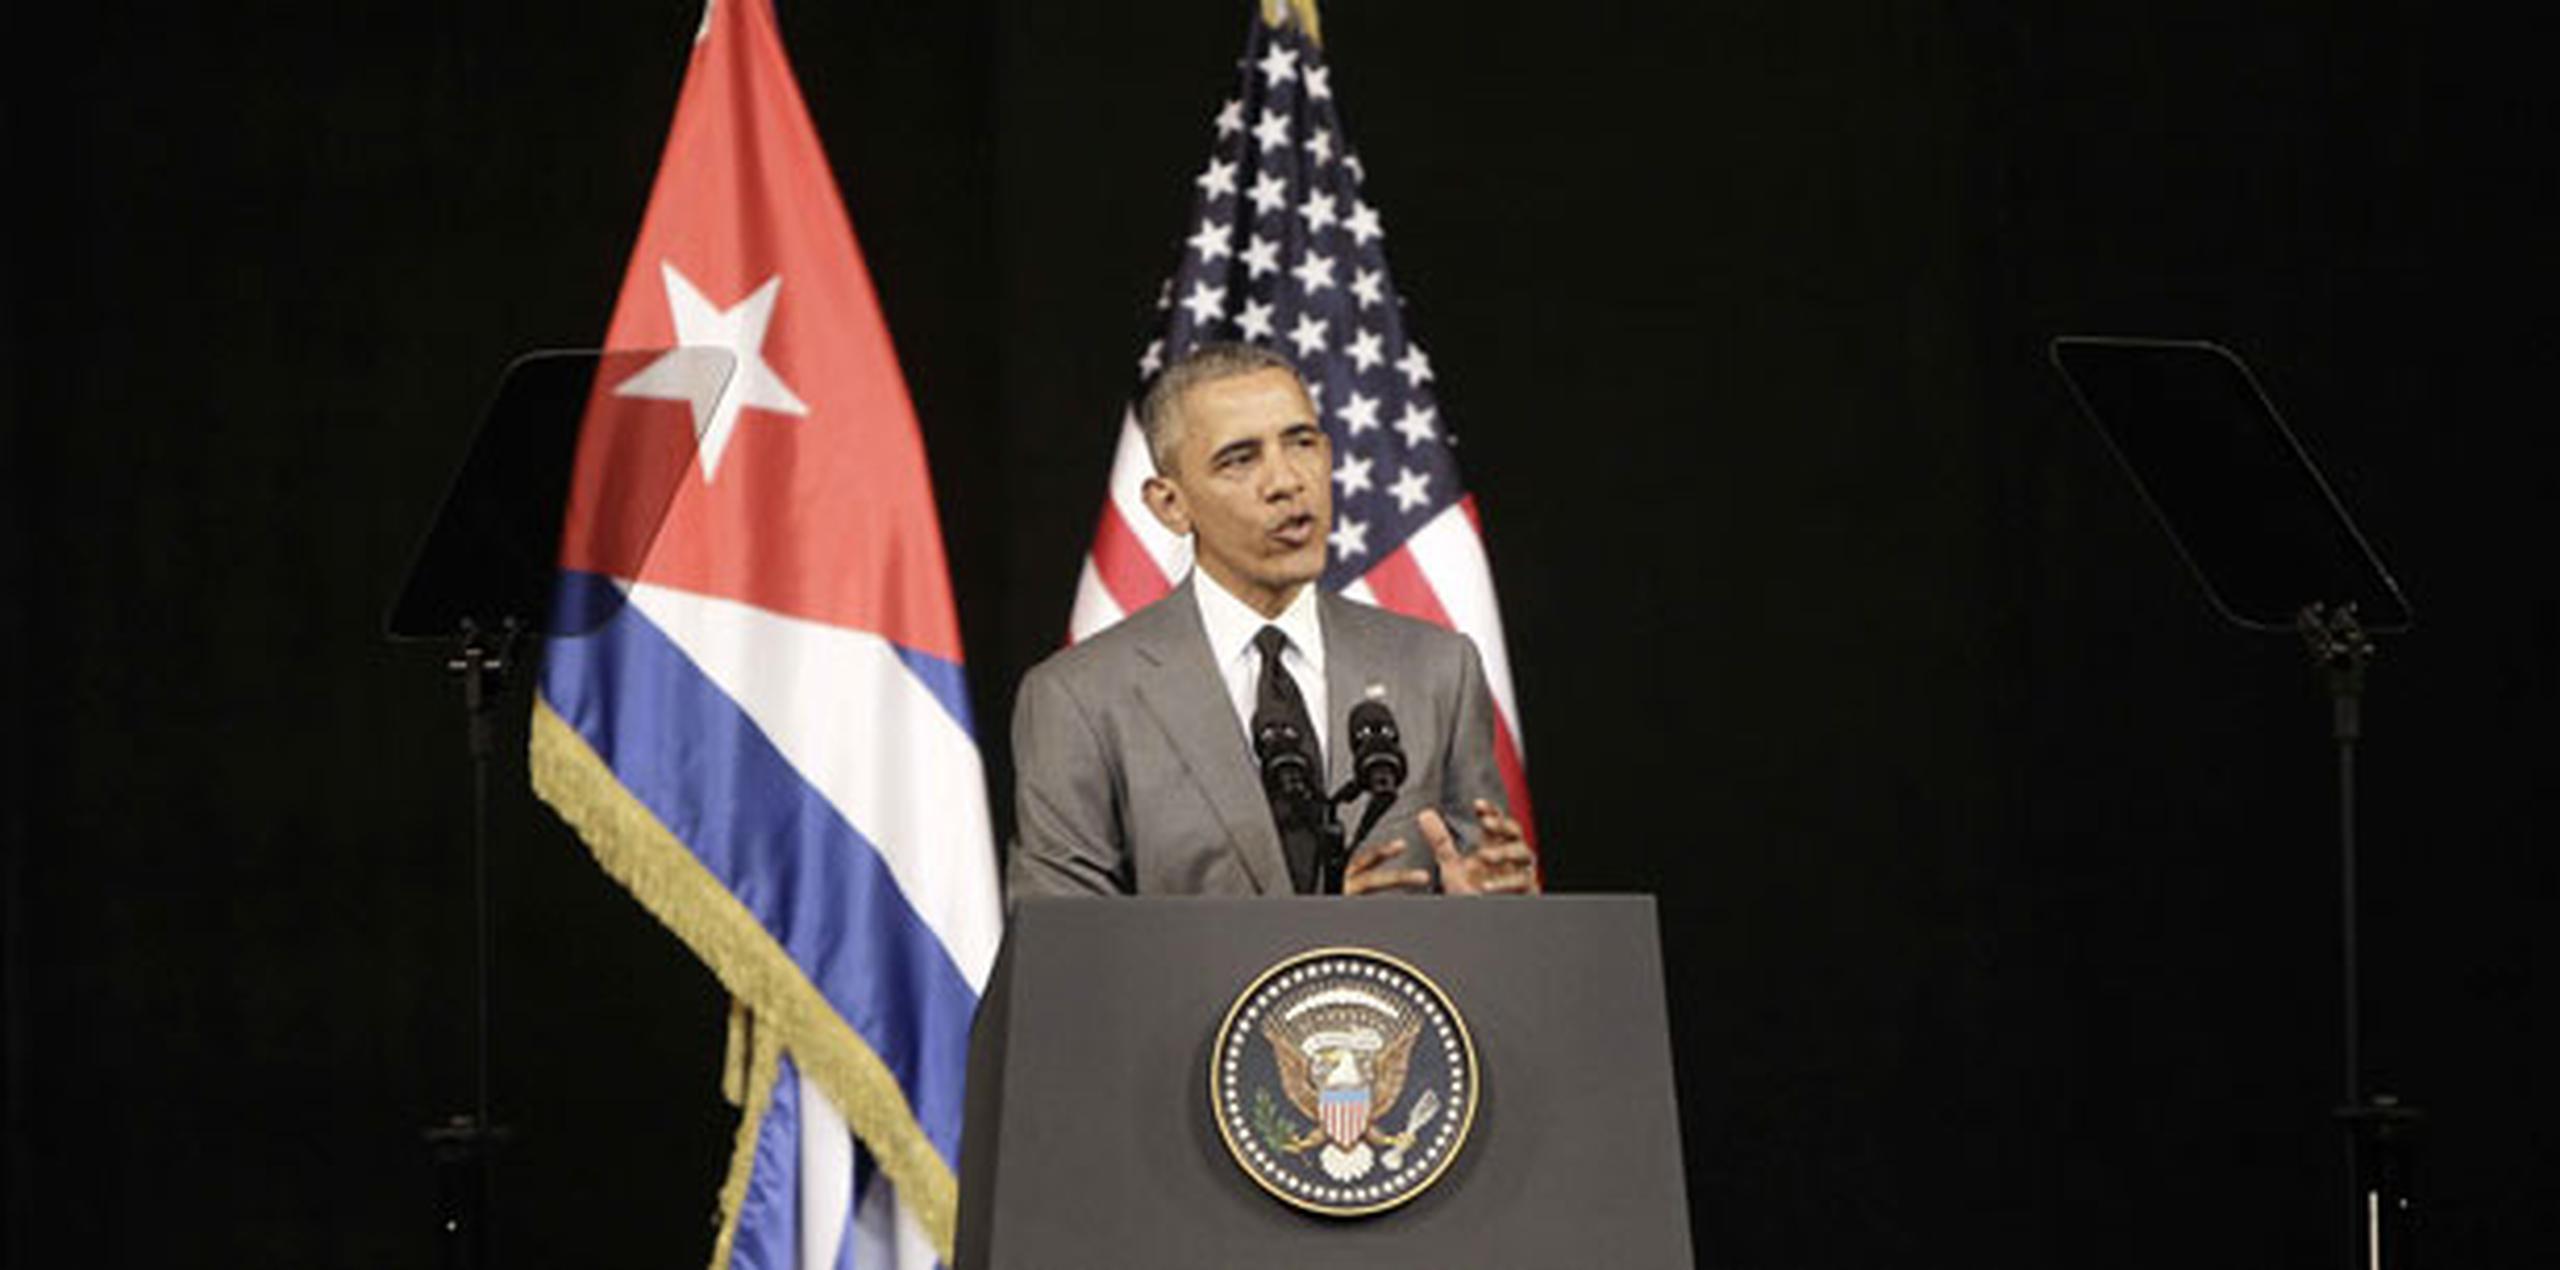 Obama realiza una histórica visita a Cuba en el mayor gesto diplomático desde que en diciembre de 2014 ambos países acordaron restablecer relaciones diplomáticas. (Agencia EFE)